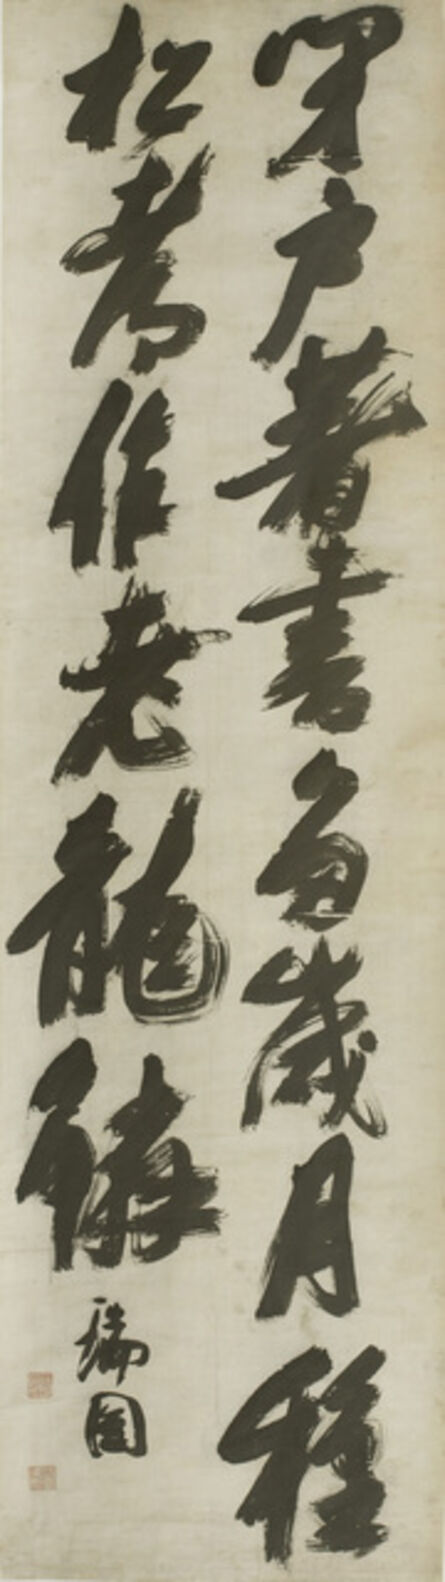 Zhang Ruitu 張瑞圖, ‘Poem by Wang Wei’, China, Ming dynasty (1368–1644), undated